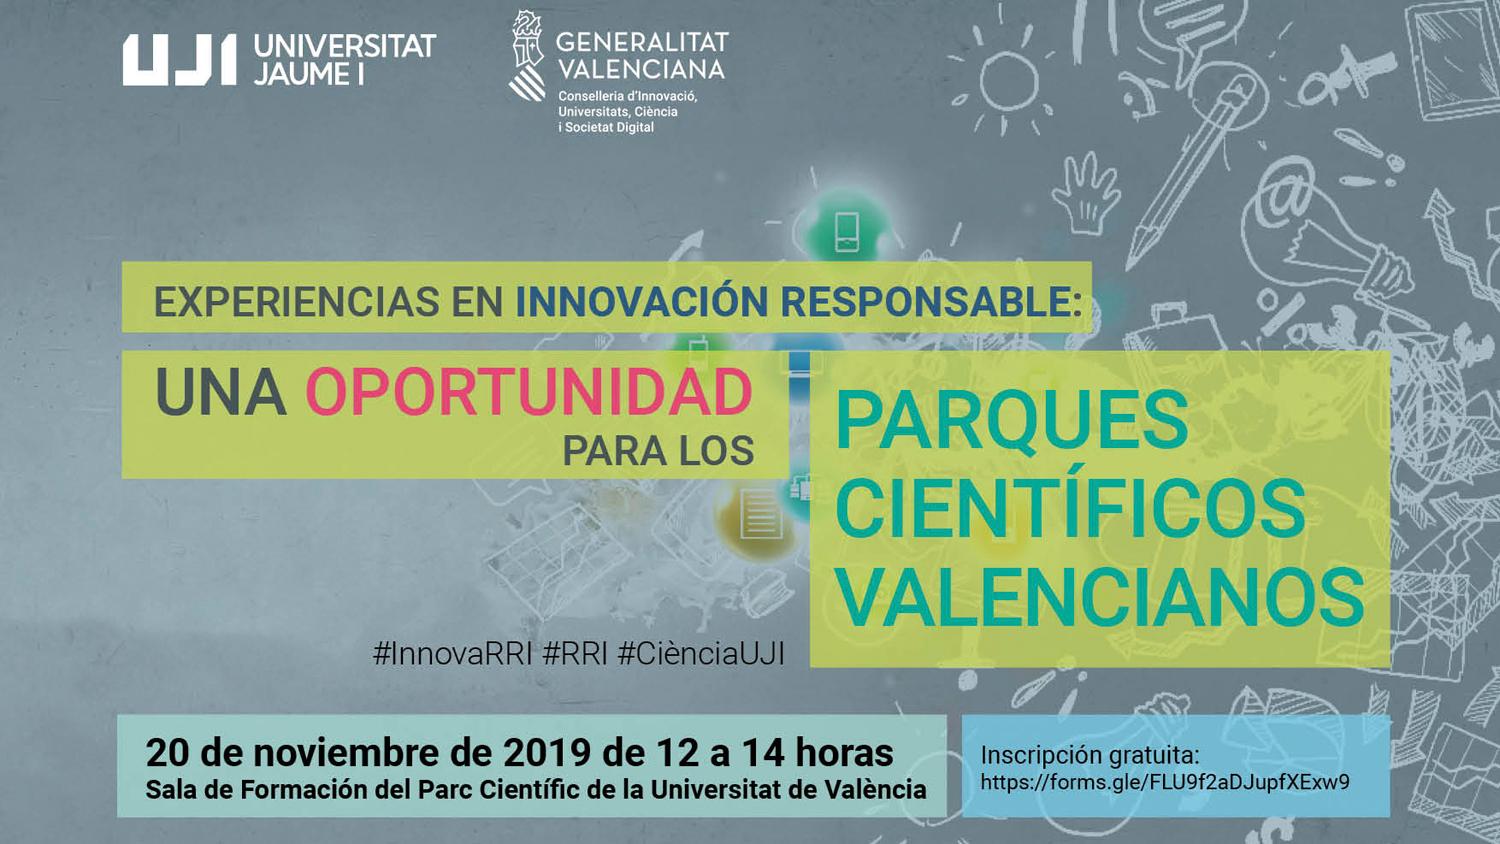 Taller: Experiencias en innovación responsable. Una oportunidad para los parques científicos valencianos